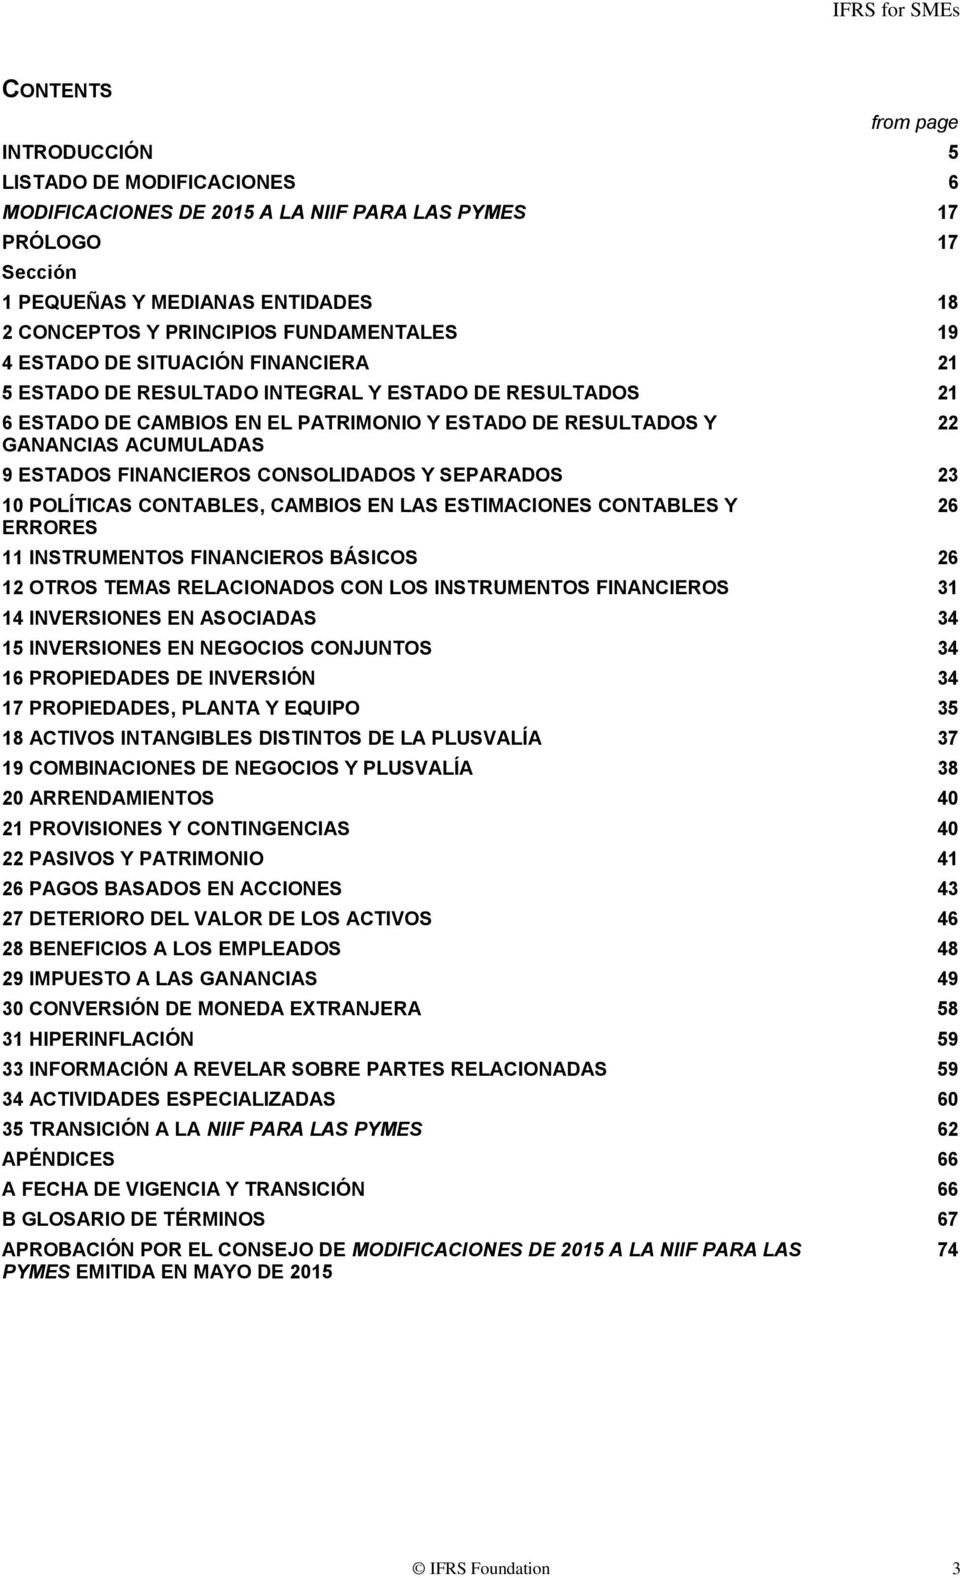 ESTADOS FINANCIEROS CONSOLIDADOS Y SEPARADOS 23 10 POLÍTICAS CONTABLES, CAMBIOS EN LAS ESTIMACIONES CONTABLES Y ERRORES 11 INSTRUMENTOS FINANCIEROS BÁSICOS 26 12 OTROS TEMAS RELACIONADOS CON LOS